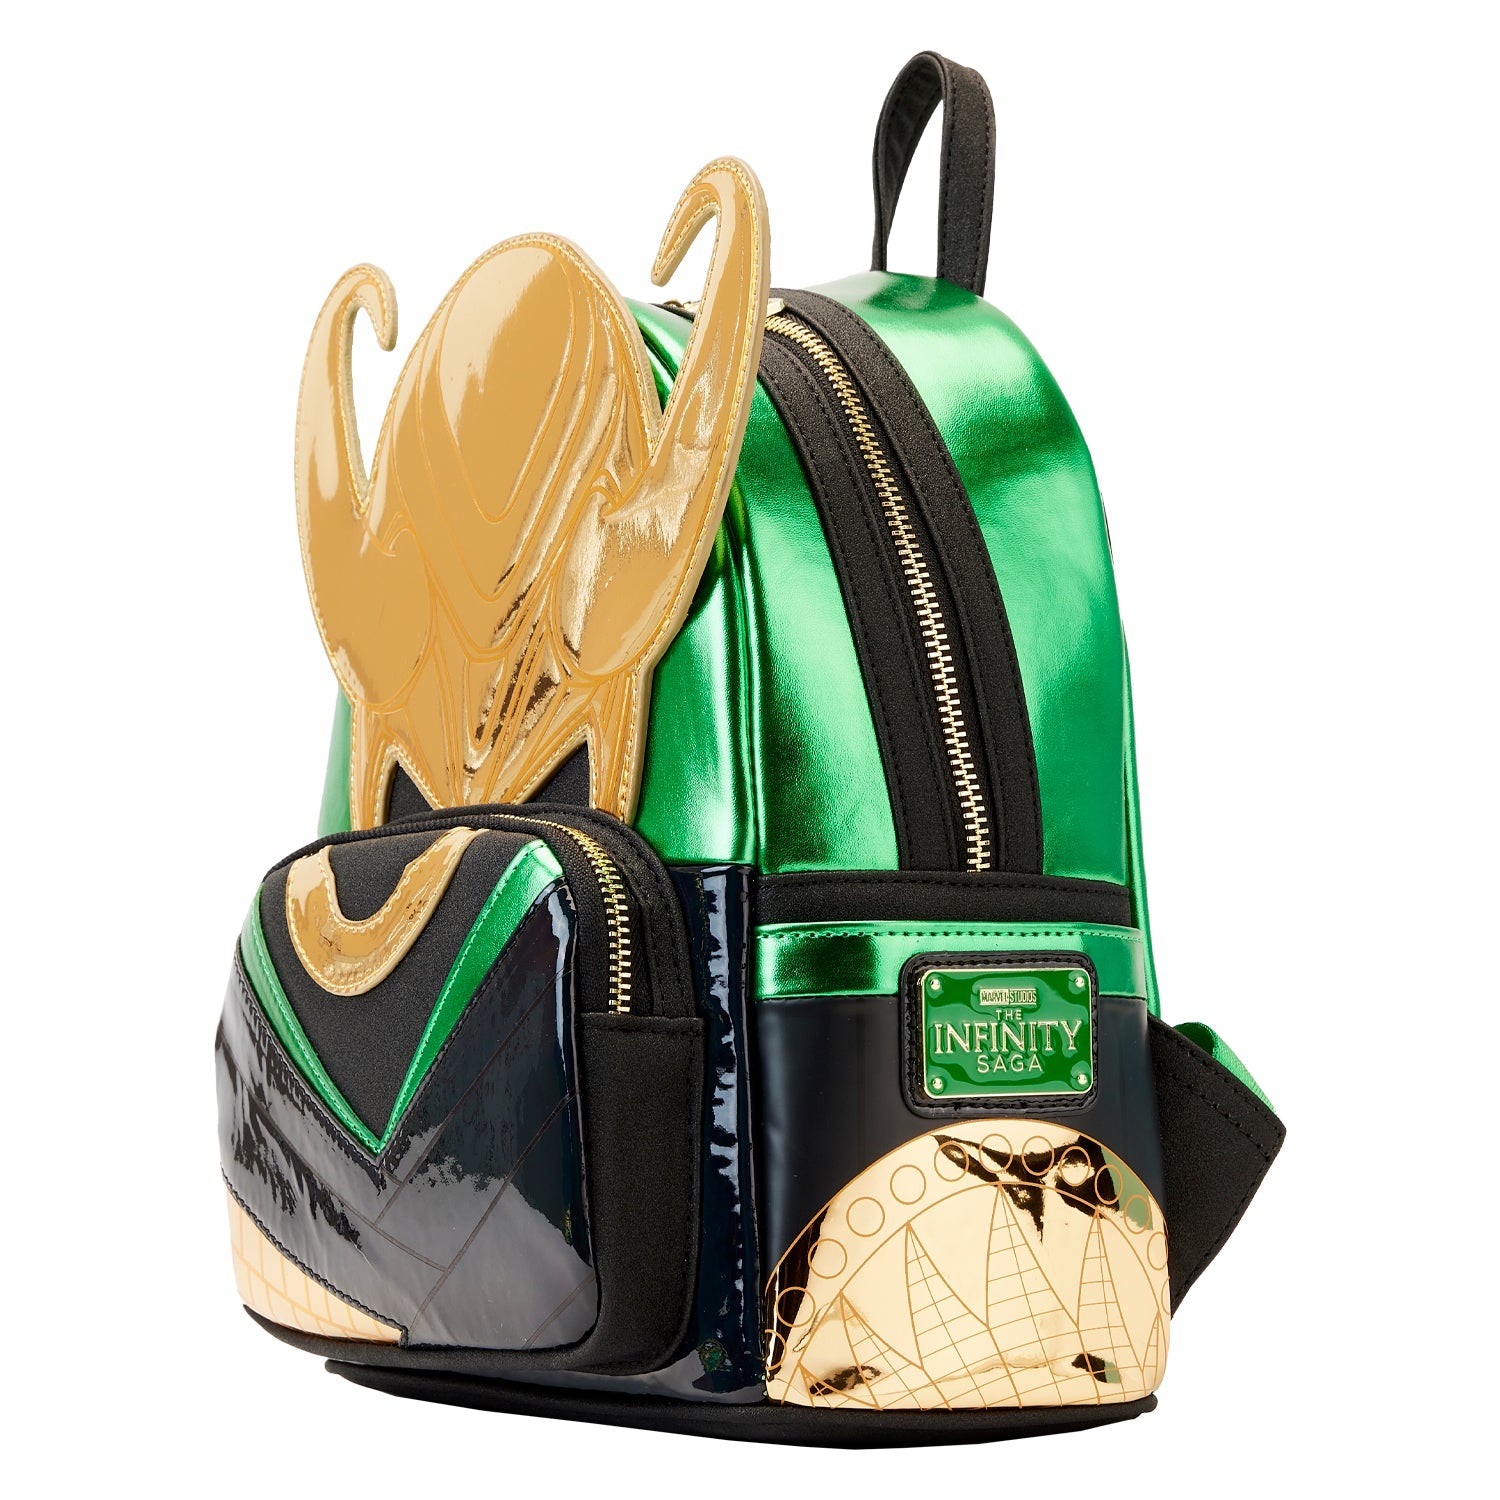 LF Marvel Metallic Loki Mini Backpack